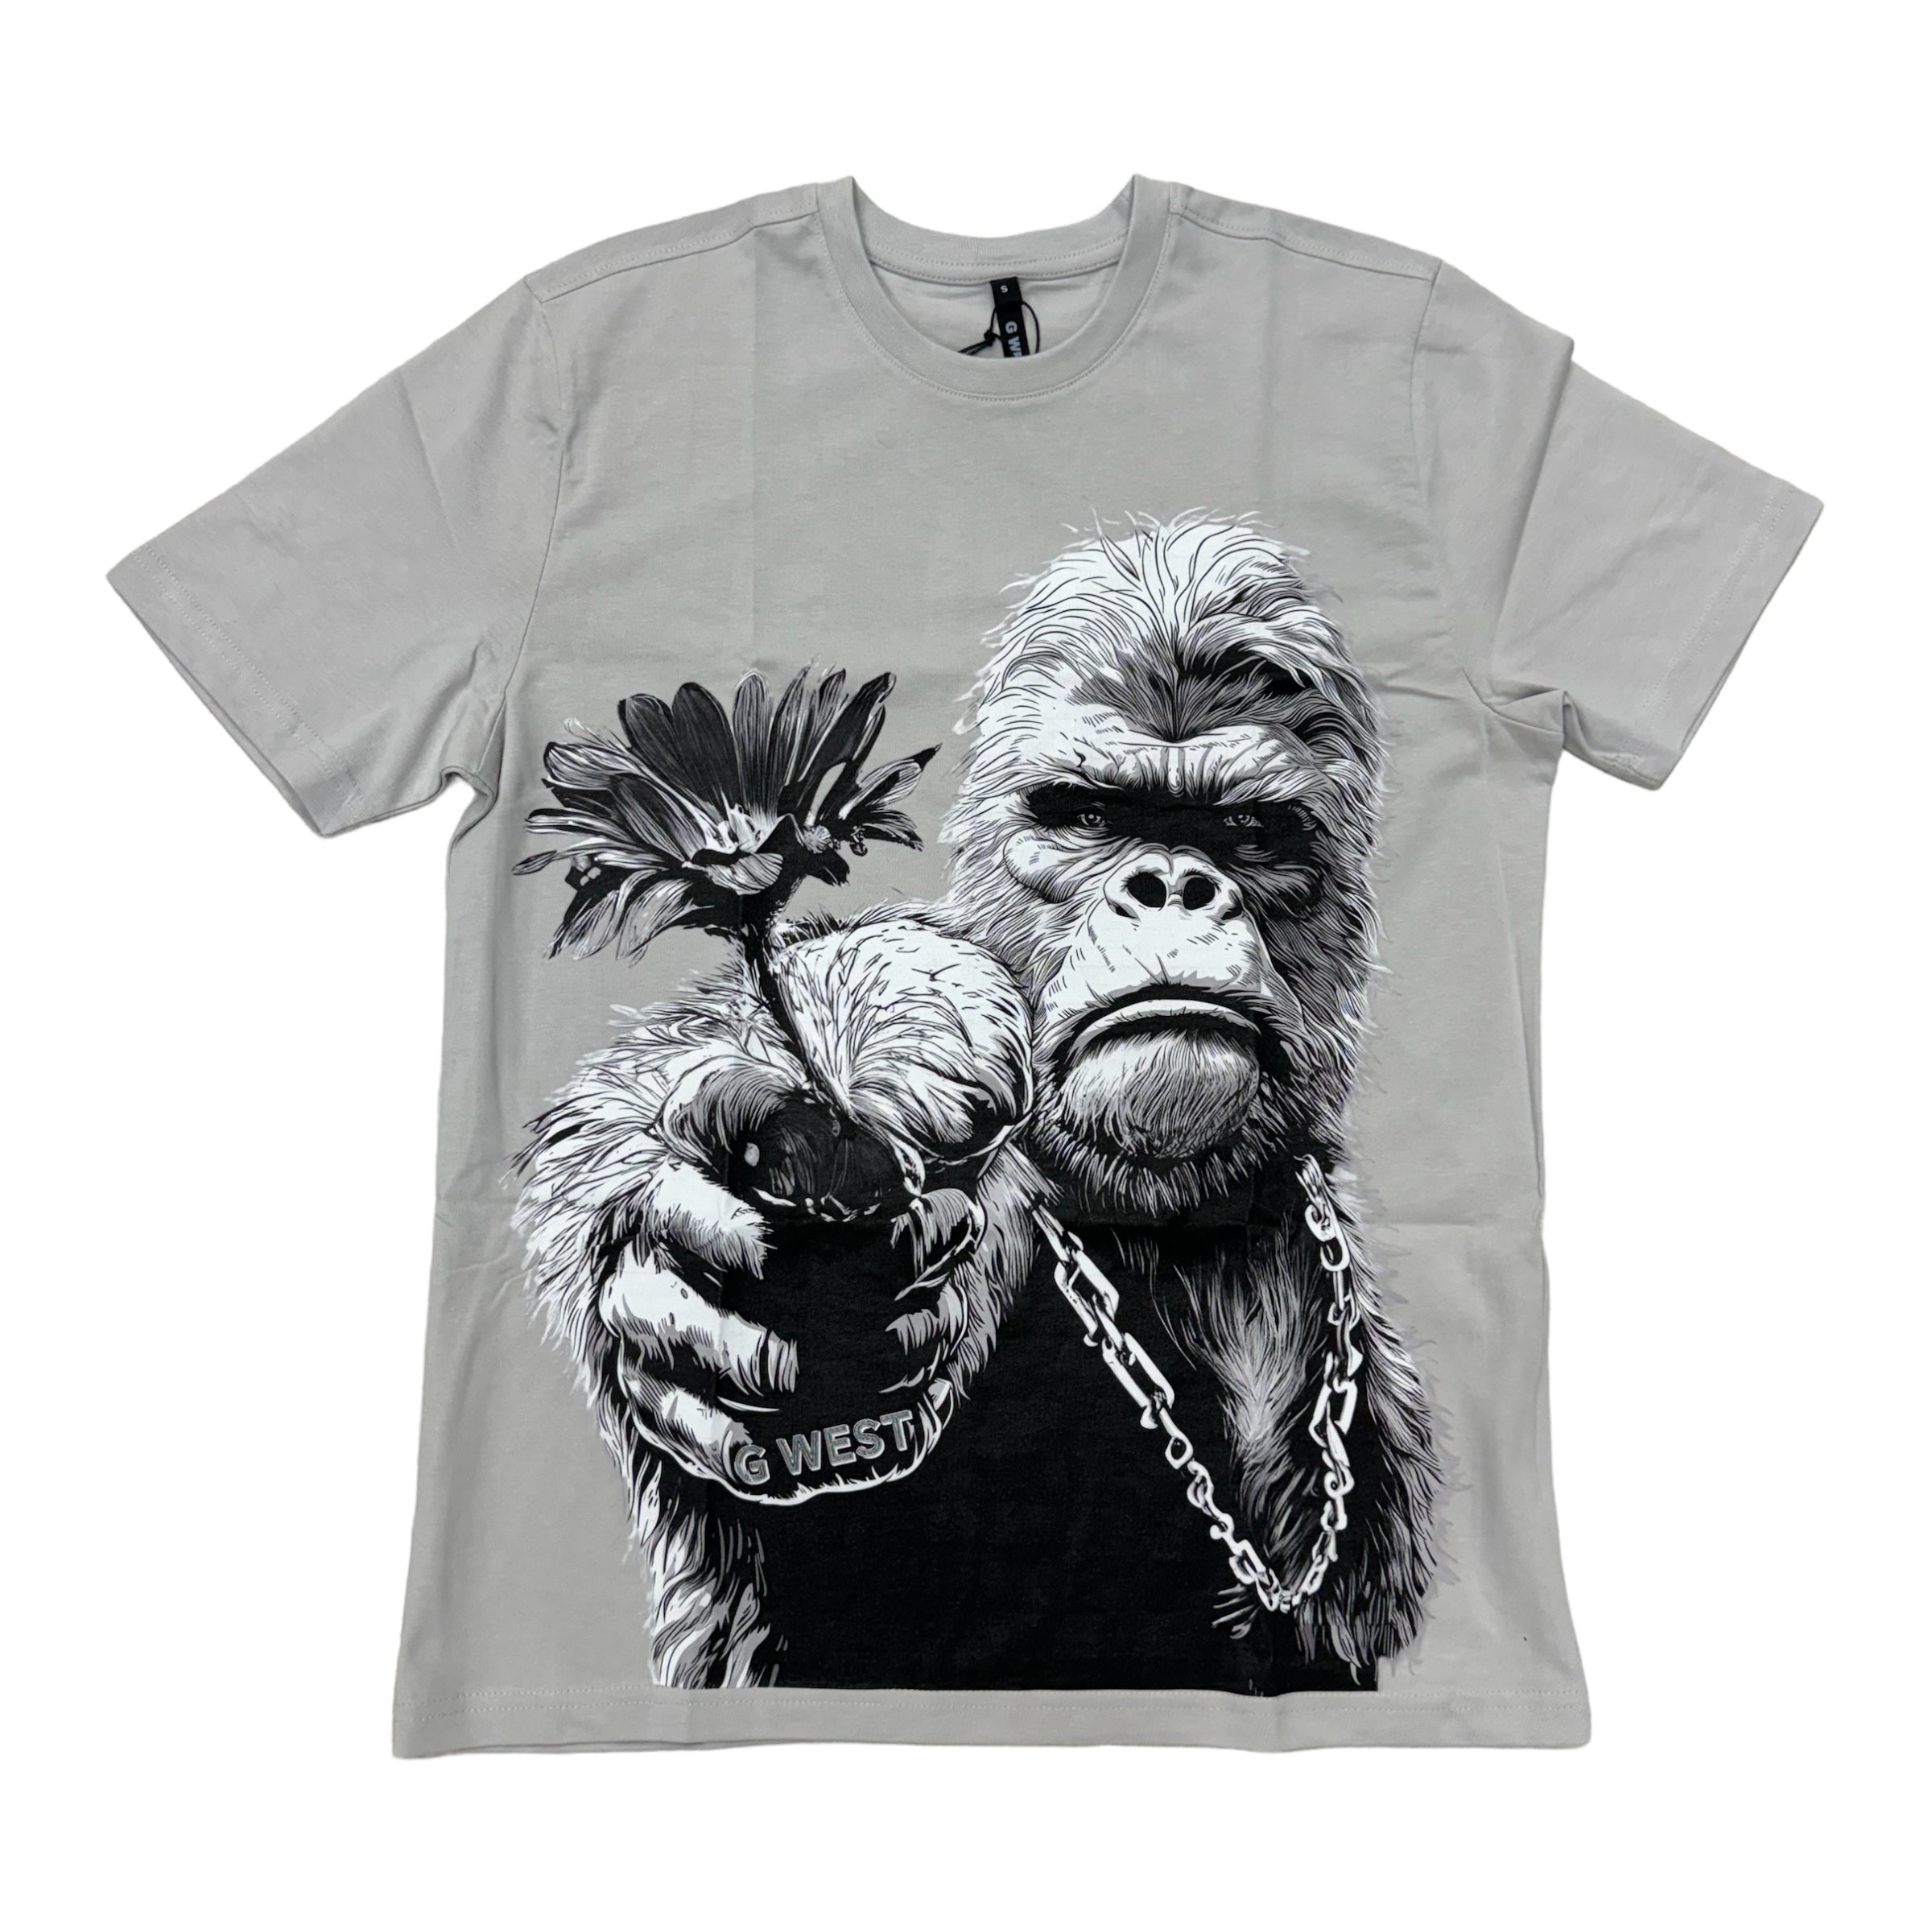 Gwest Big Man T-shirt Grey 5052